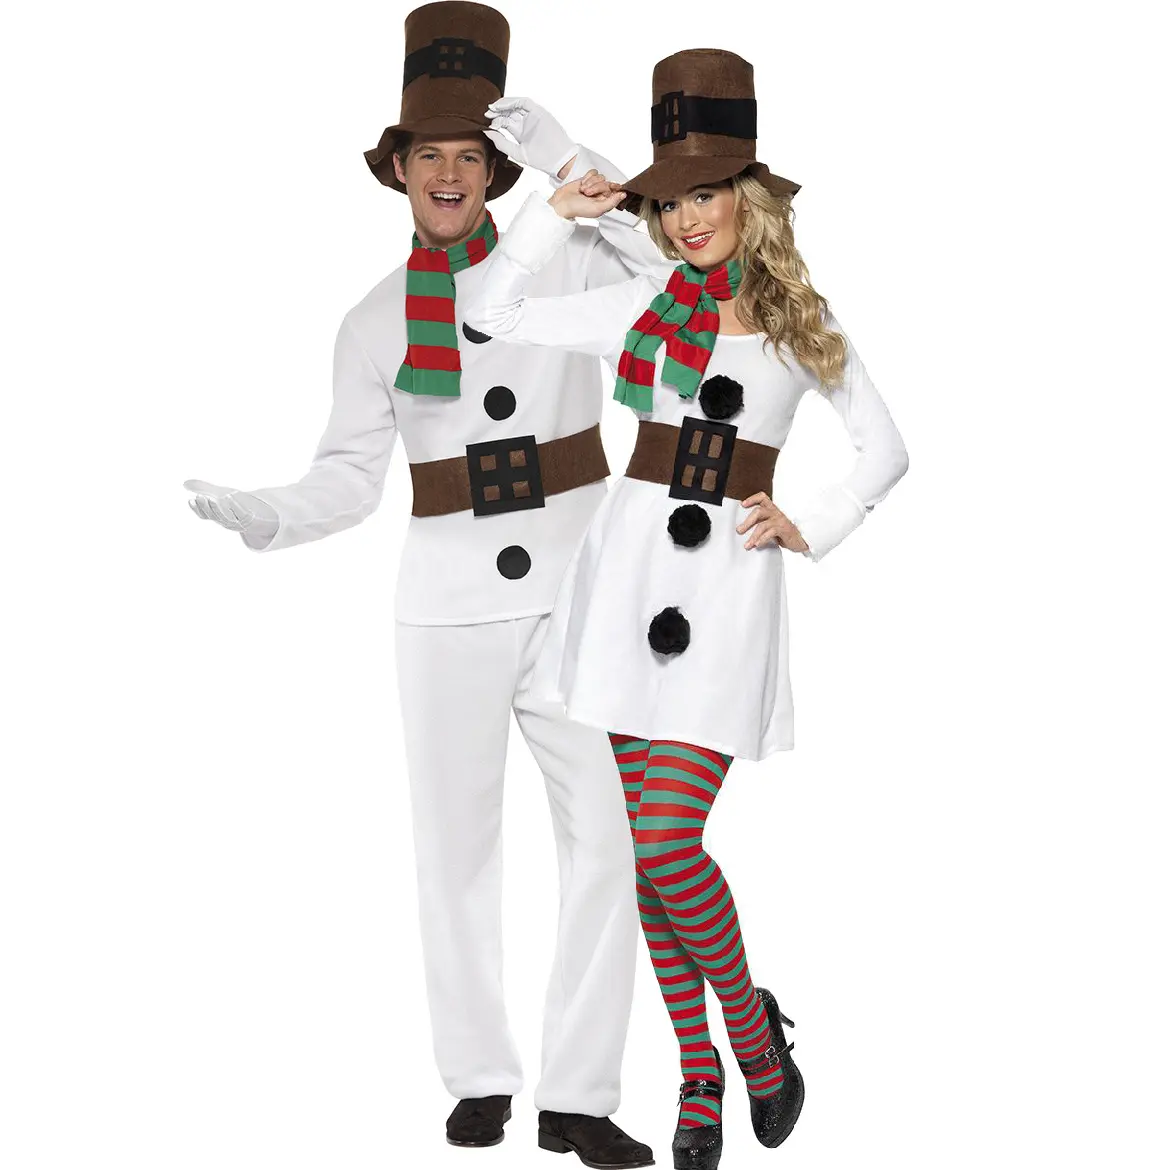 Men's white Christmas suit uniform suit couple snowman Christmas costume